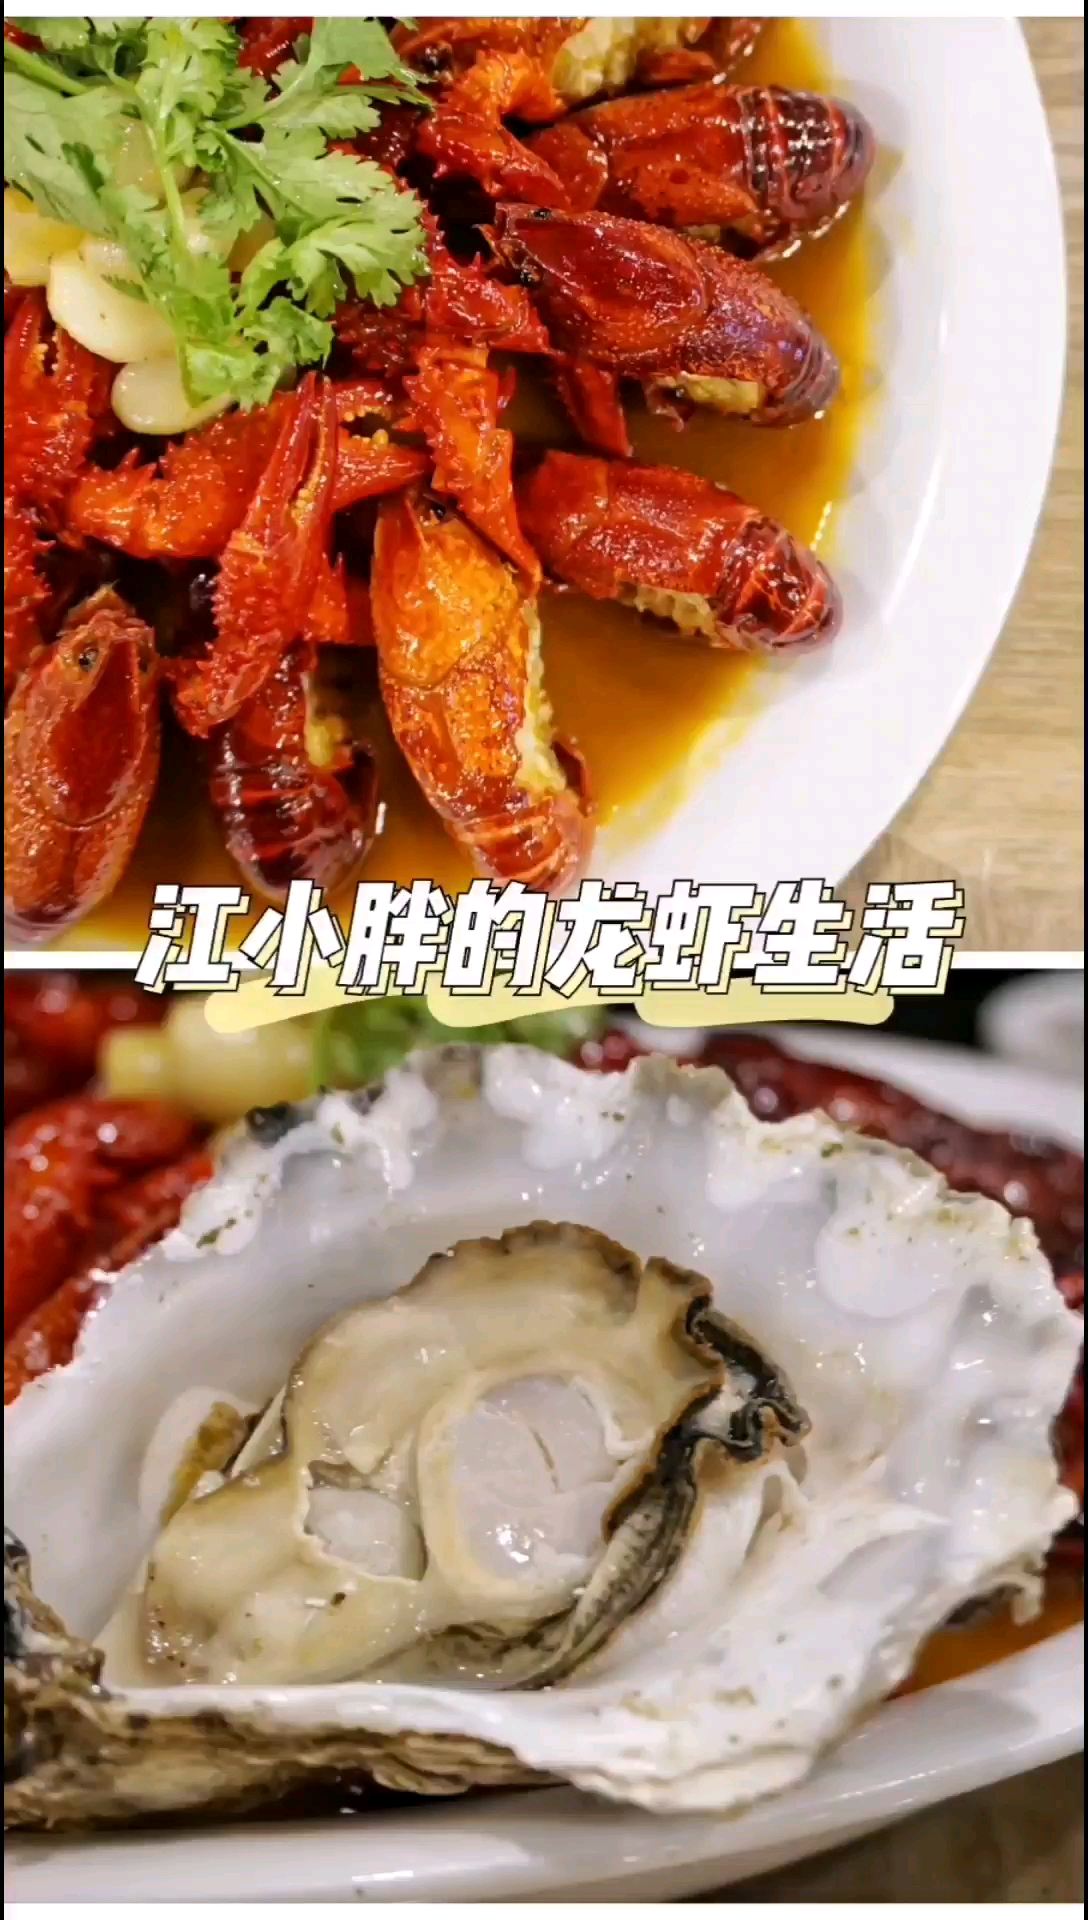 南京必吃小龙虾/去腮剪脚的小龙虾不试试吗？